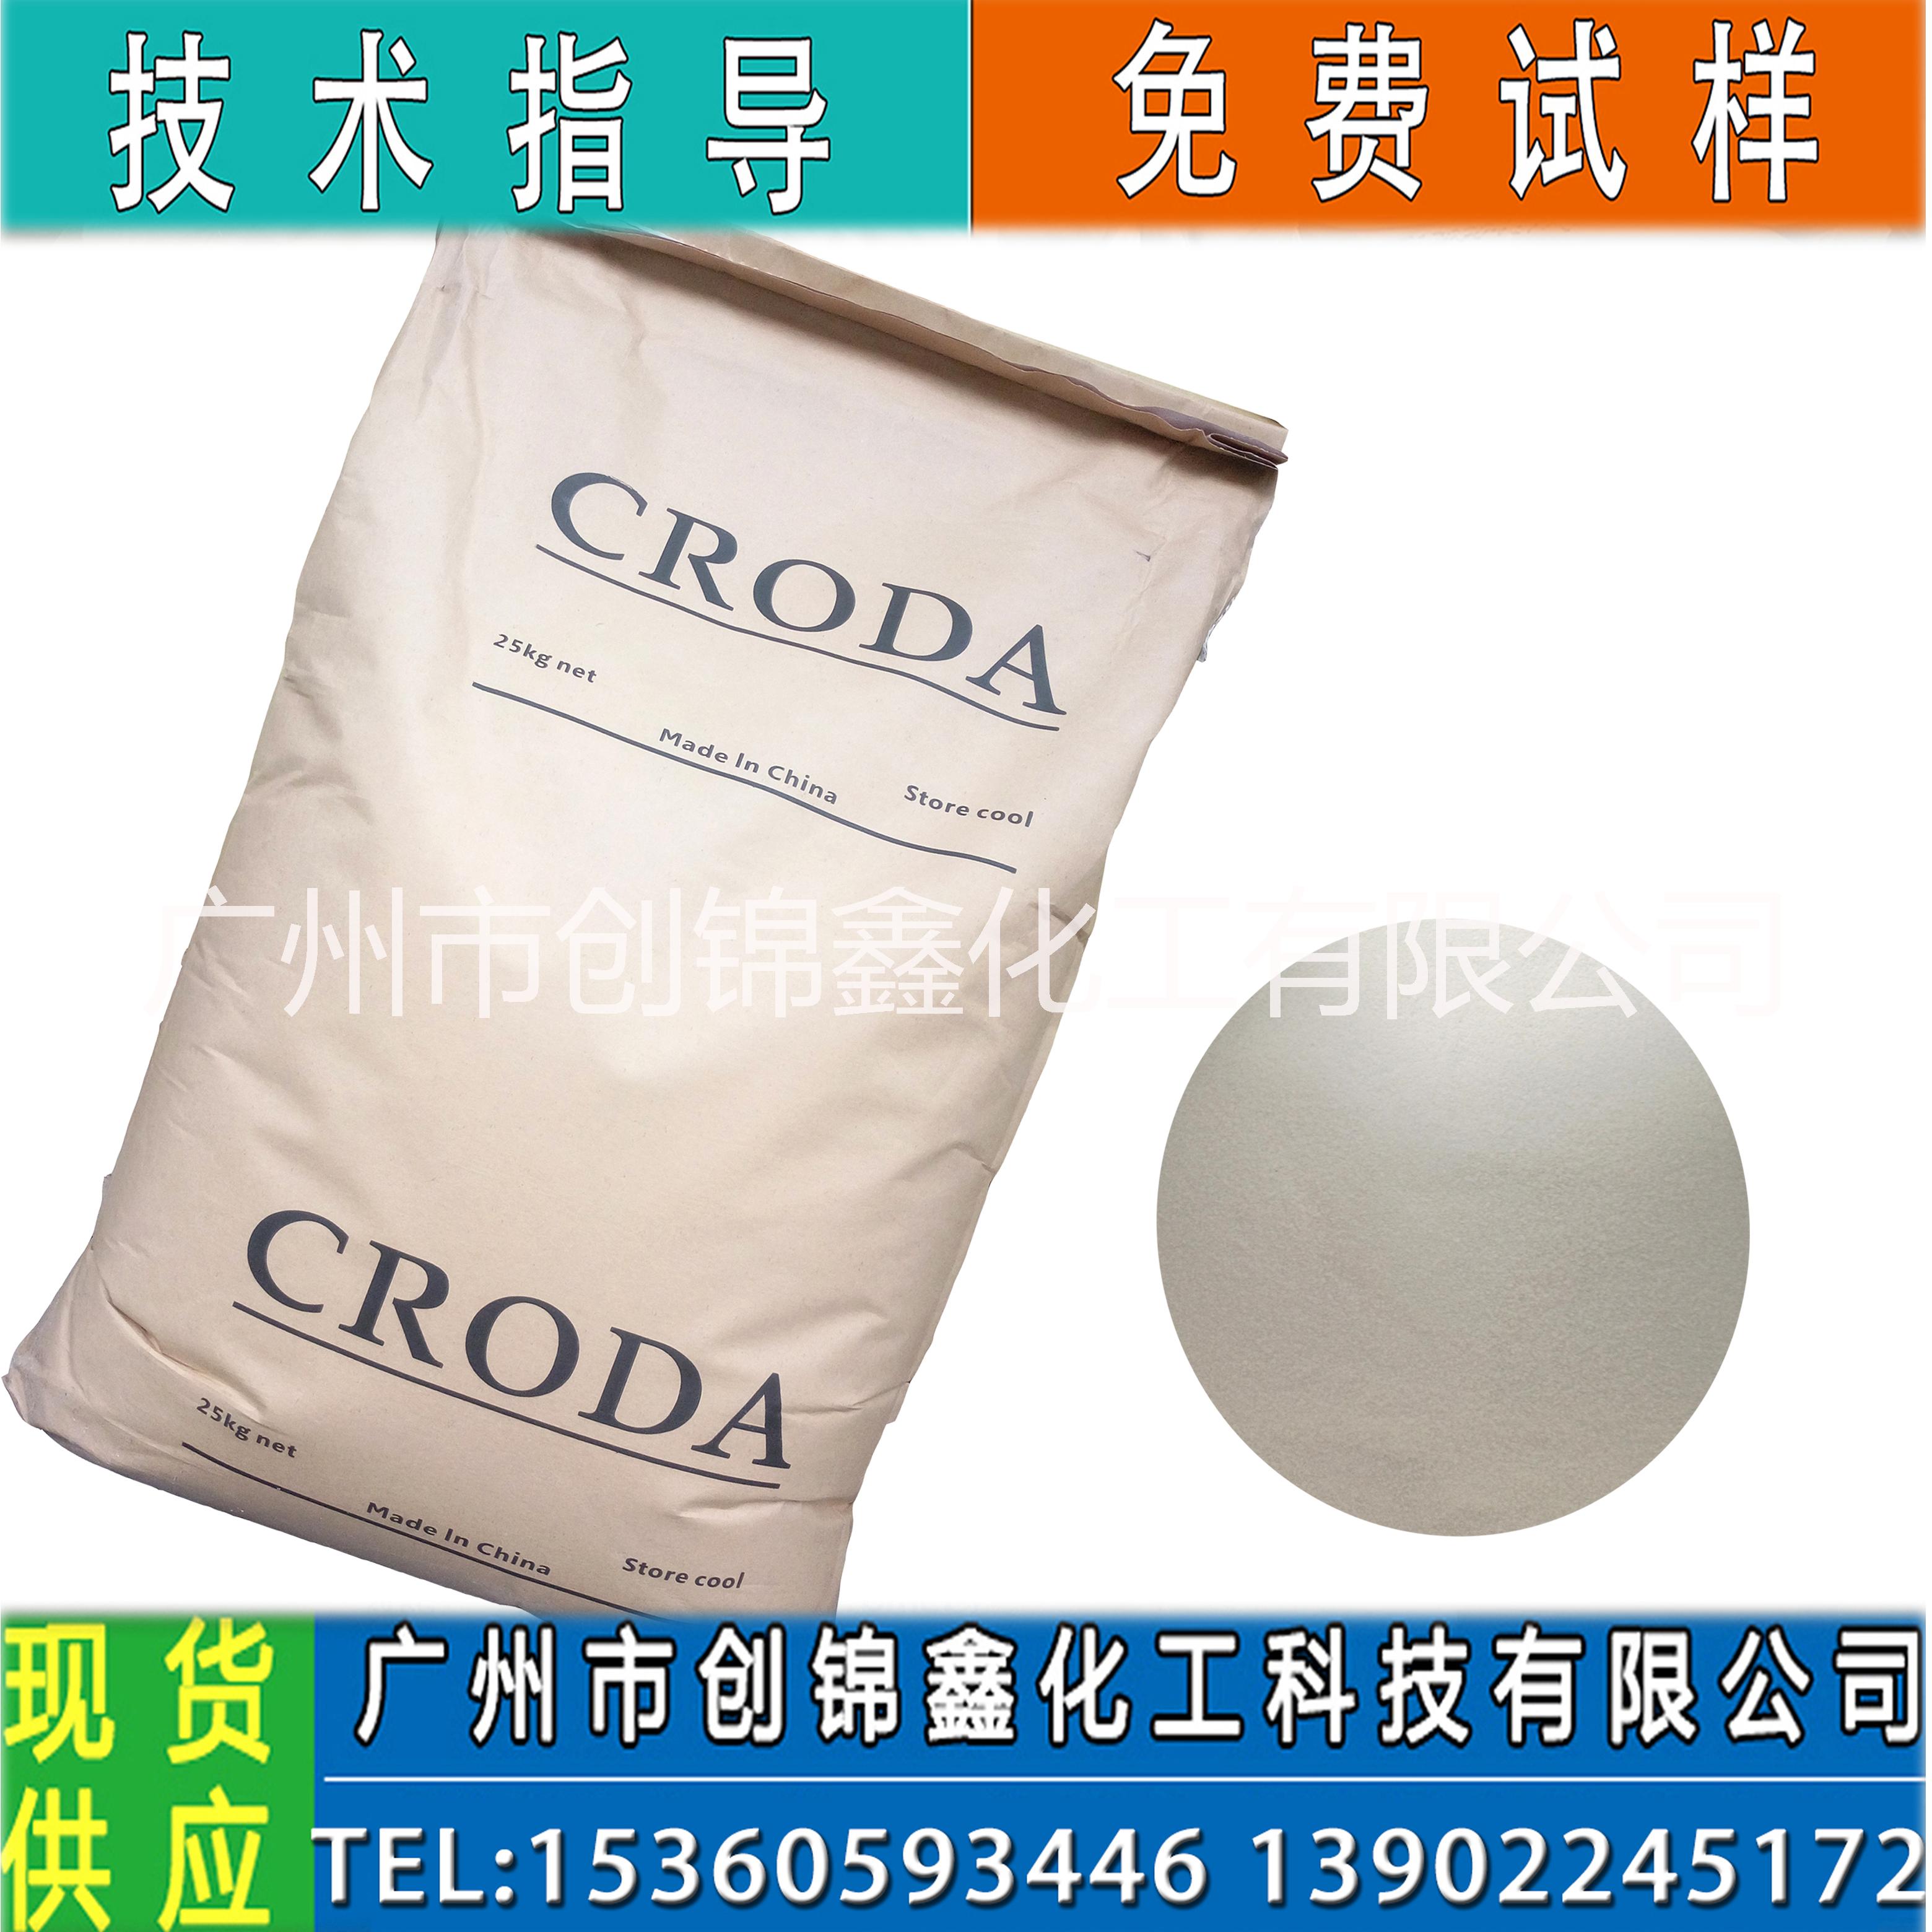 禾大西普芥酸酰胺CRODA 聚丙烯塑料薄膜开口抗粘剂